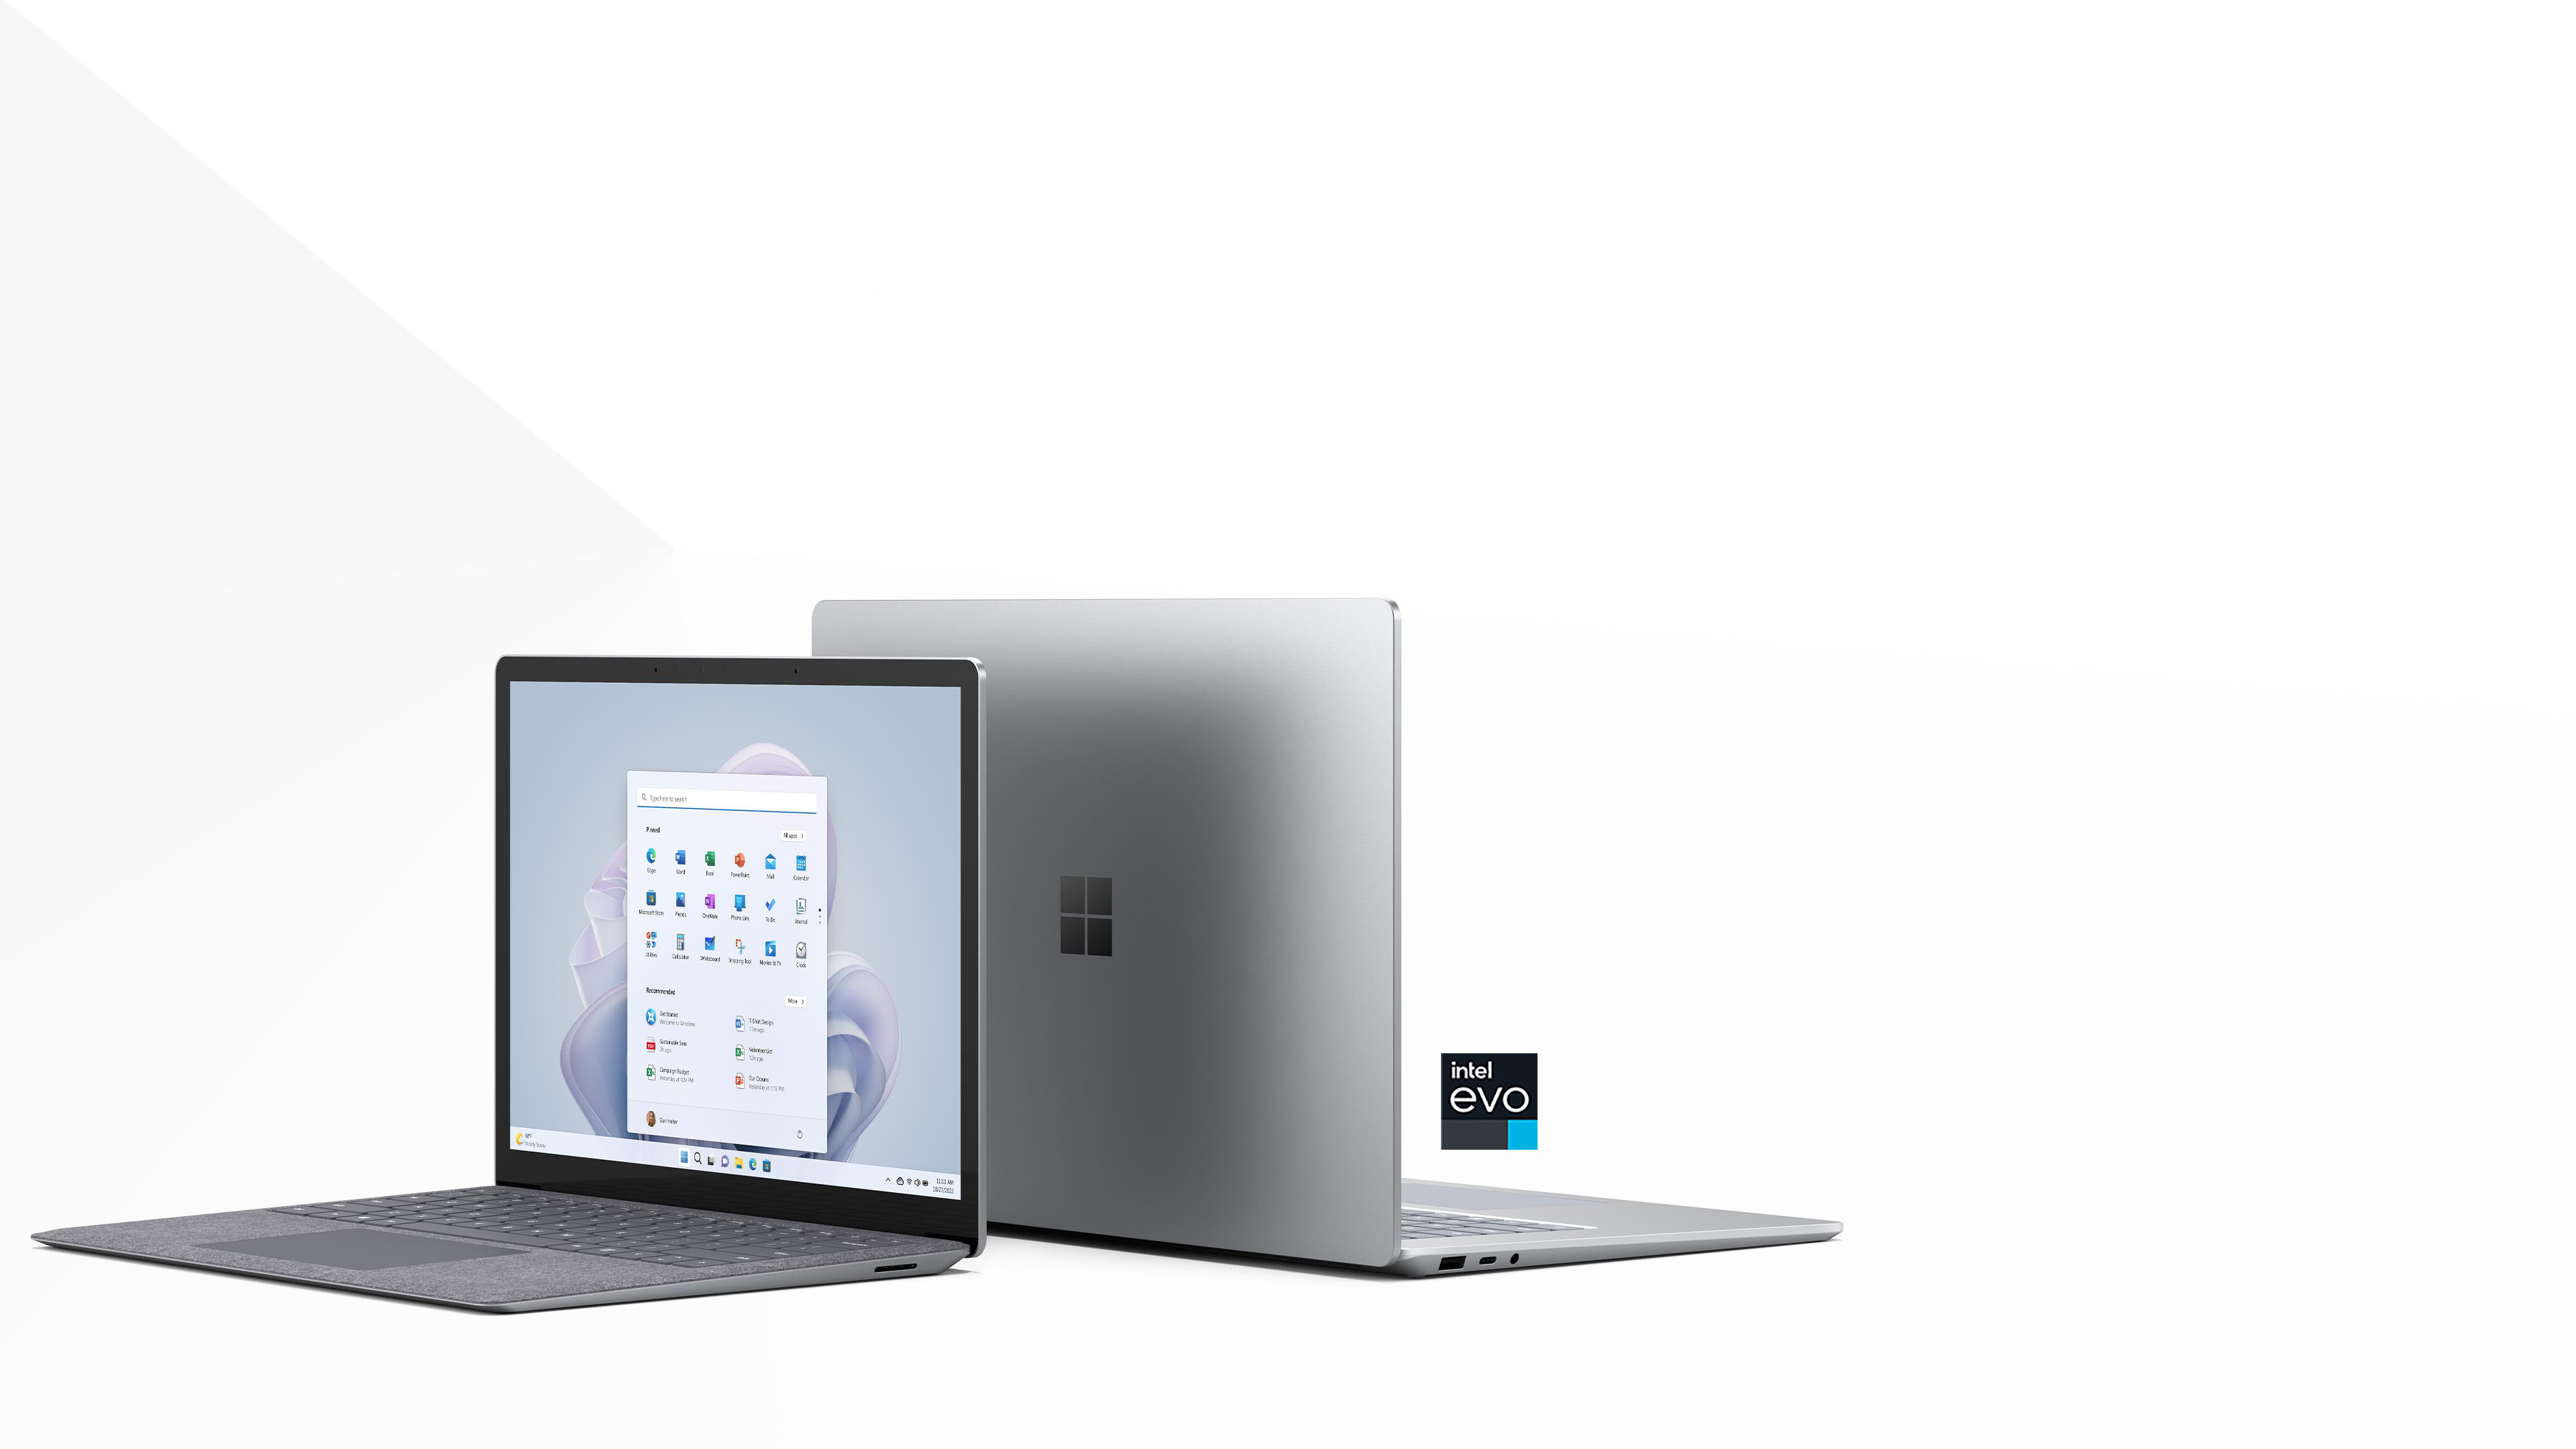 De to størrelser af Surface Laptop 5 er vist med ryg mod ryg med 13,5" foran fuldt åben med startskærmen i platin farve. 15" vender mod bagsiden af billedet med toppen delvist åben. Den er Intel Evo-certificeret.